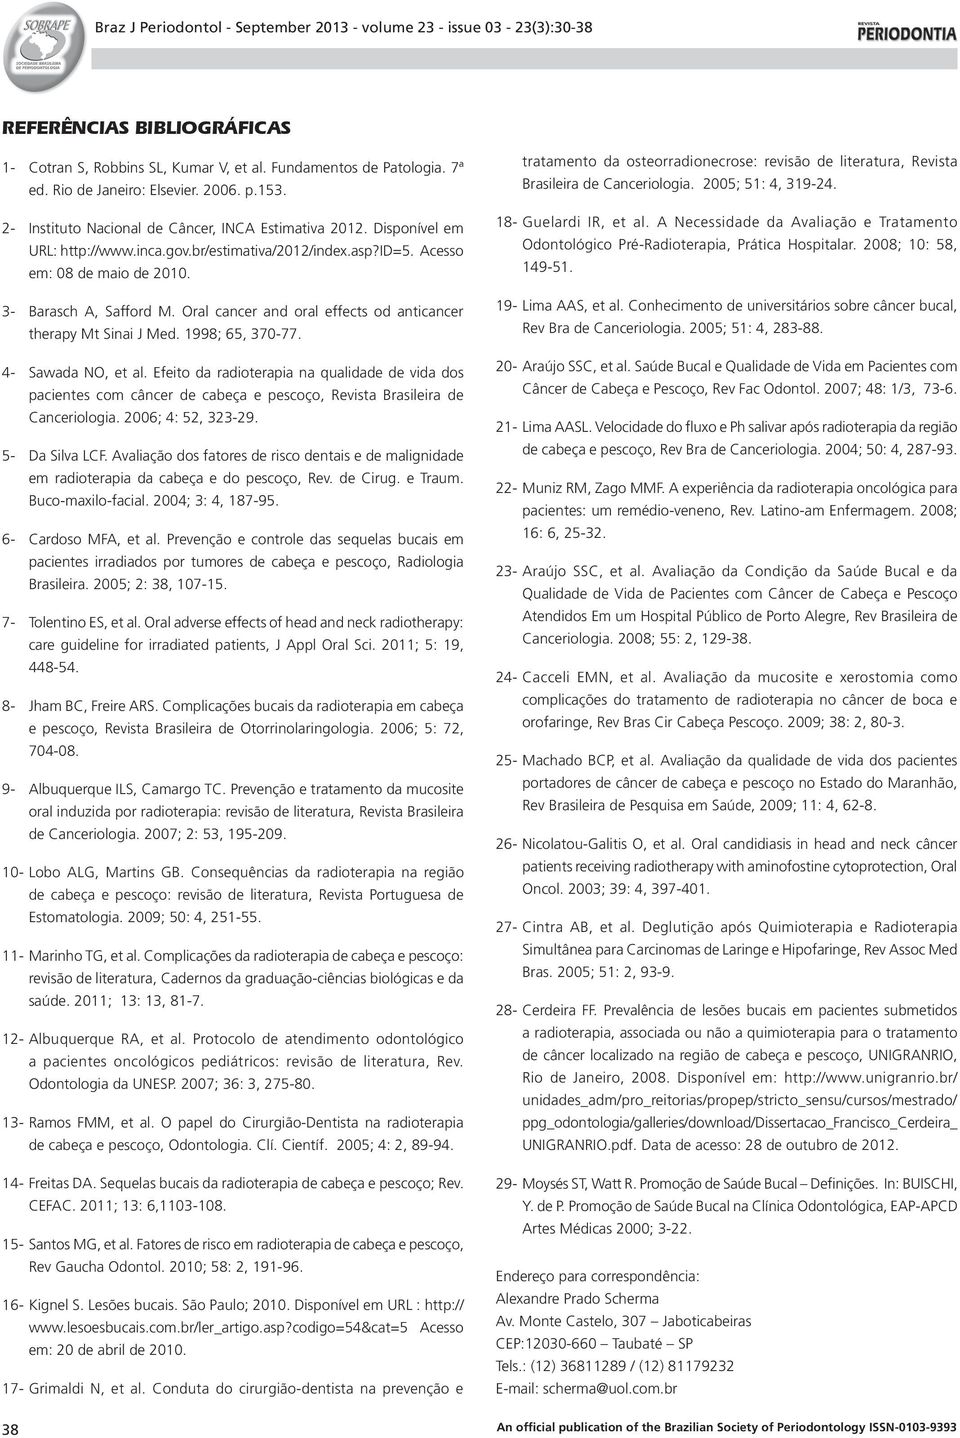 1998; 65, 370-77. 4- Sawada NO, et al. Efeito da radioterapia na qualidade de vida dos pacientes com câncer de cabeça e pescoço, Revista Brasileira de Canceriologia. 2006; 4: 52, 323-29.